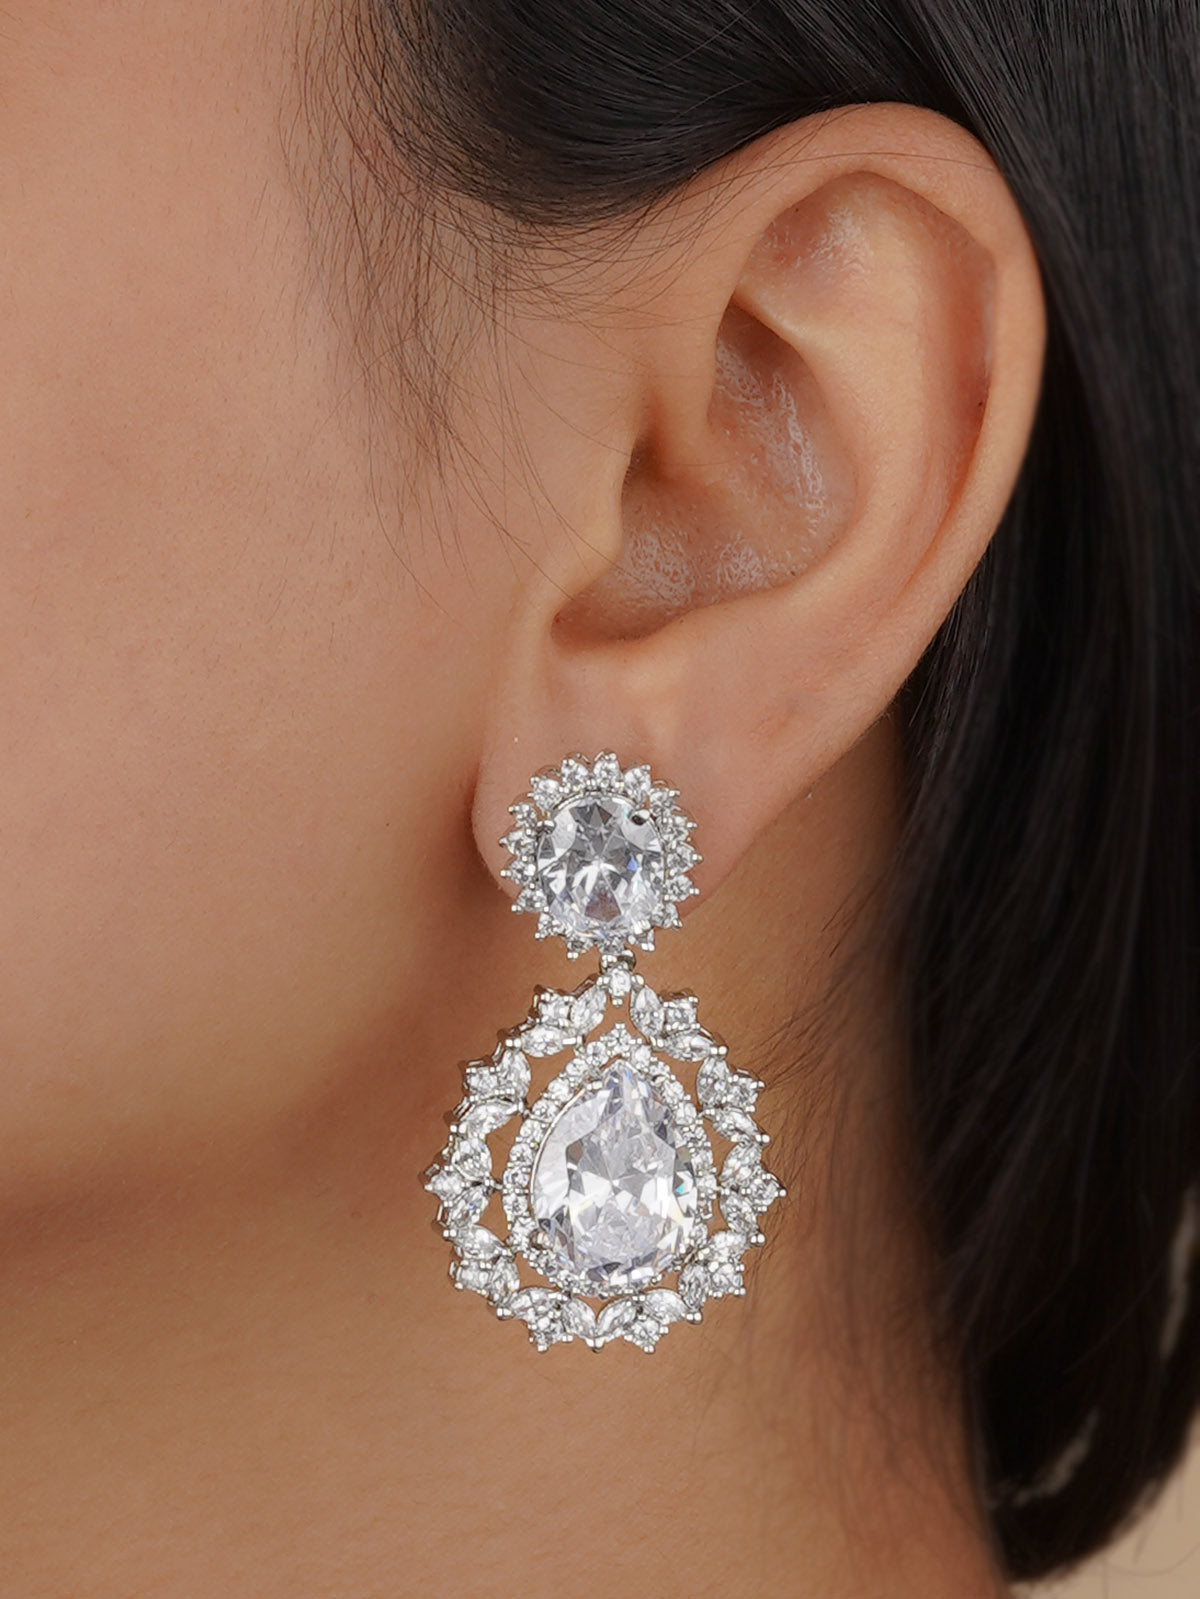 CZEAR526 - Silver Plated Faux Diamond Earrings